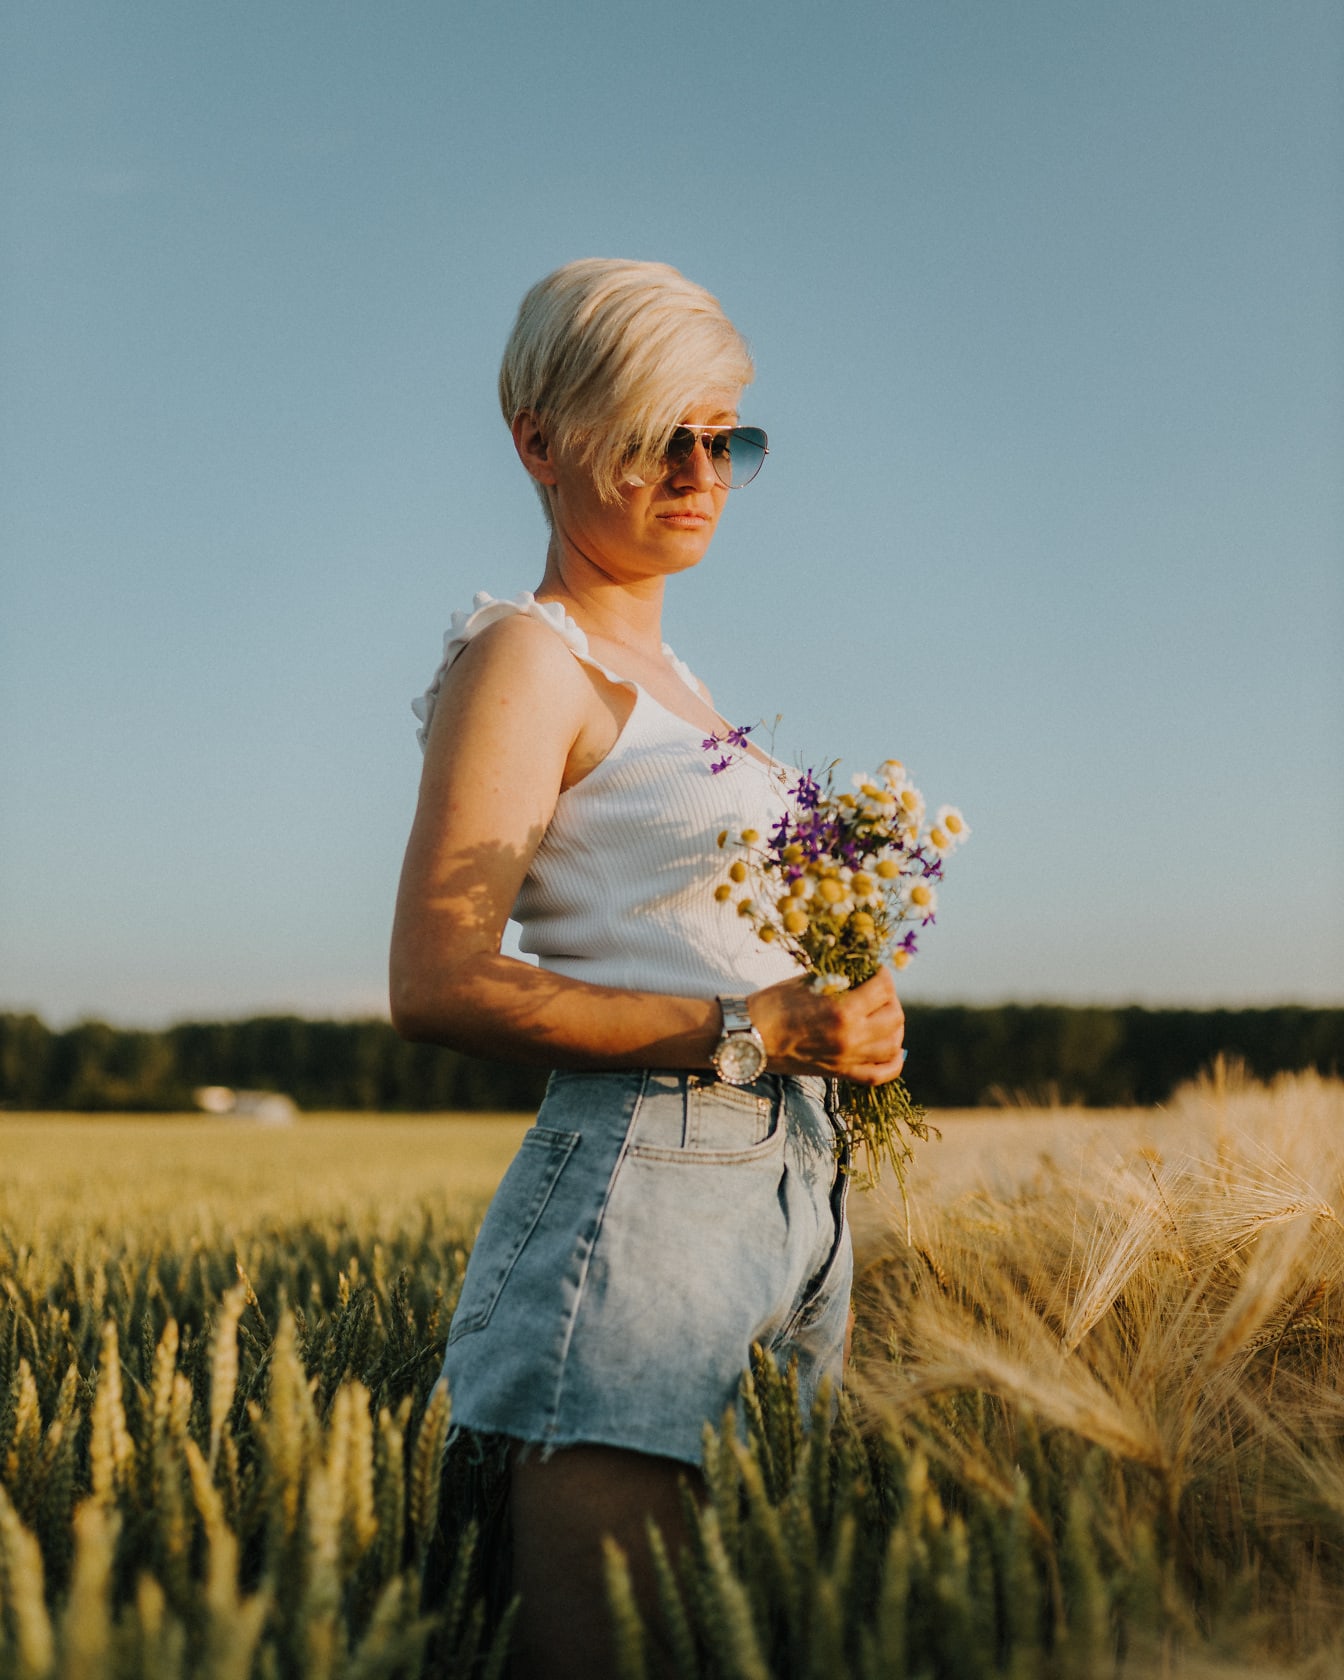 Rozkošné krátké vlasy blond s kyticí květin v pšeničném poli